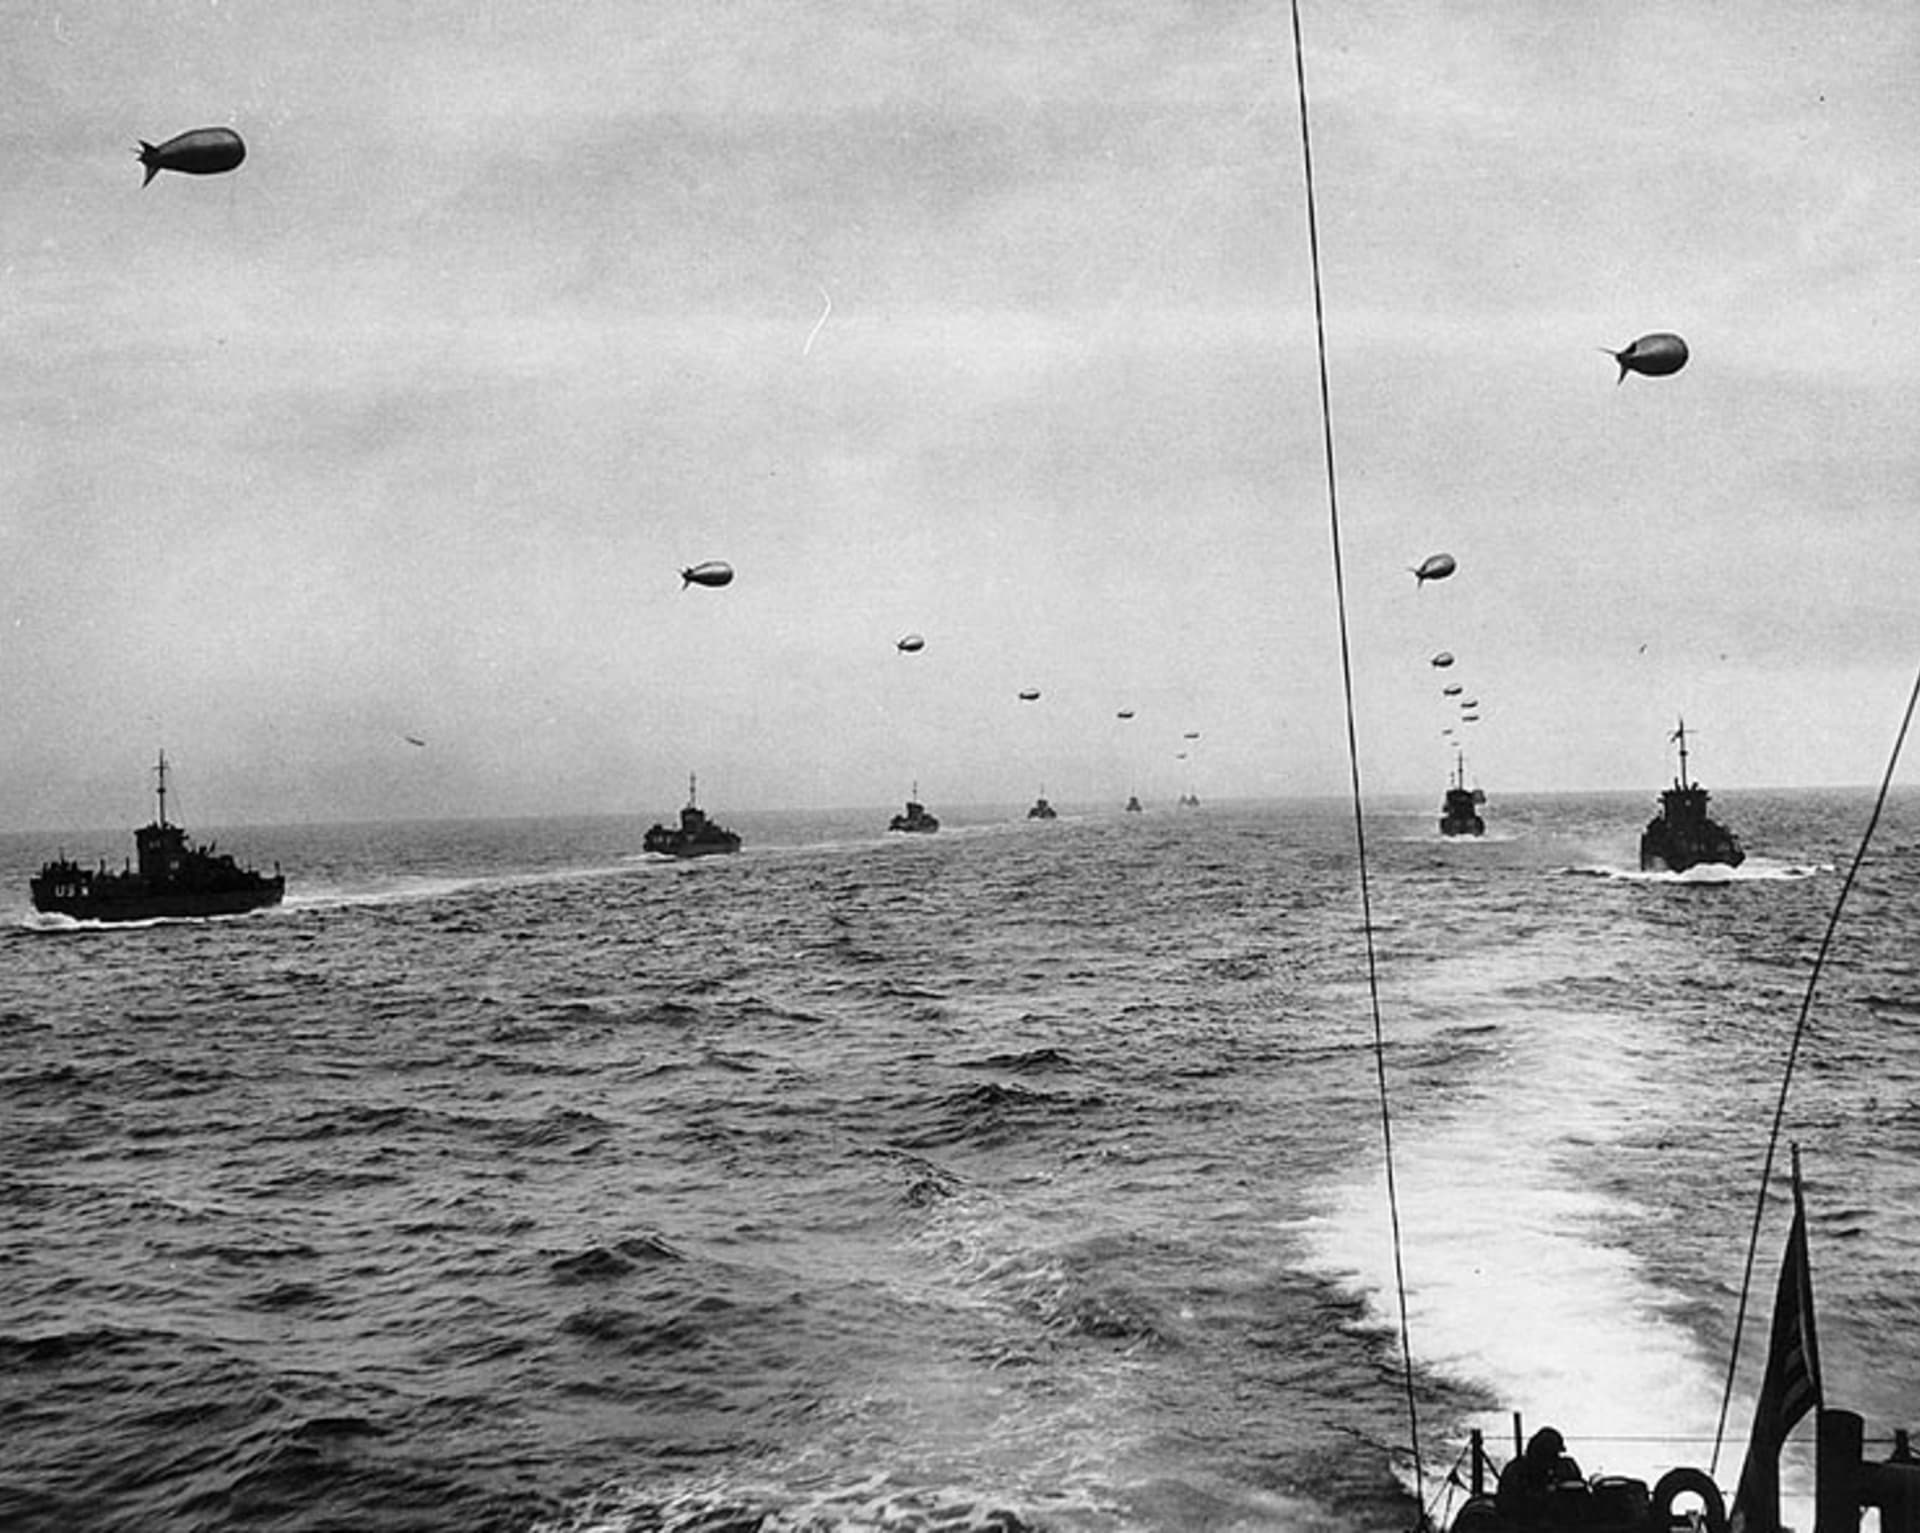 Velké vyloďovací lodě (LCI) se blíží 6. června 1944 k pobřeží Francie. Každá z lodí táhne balónovou baráž na ochranu před nepřátelským letectvem